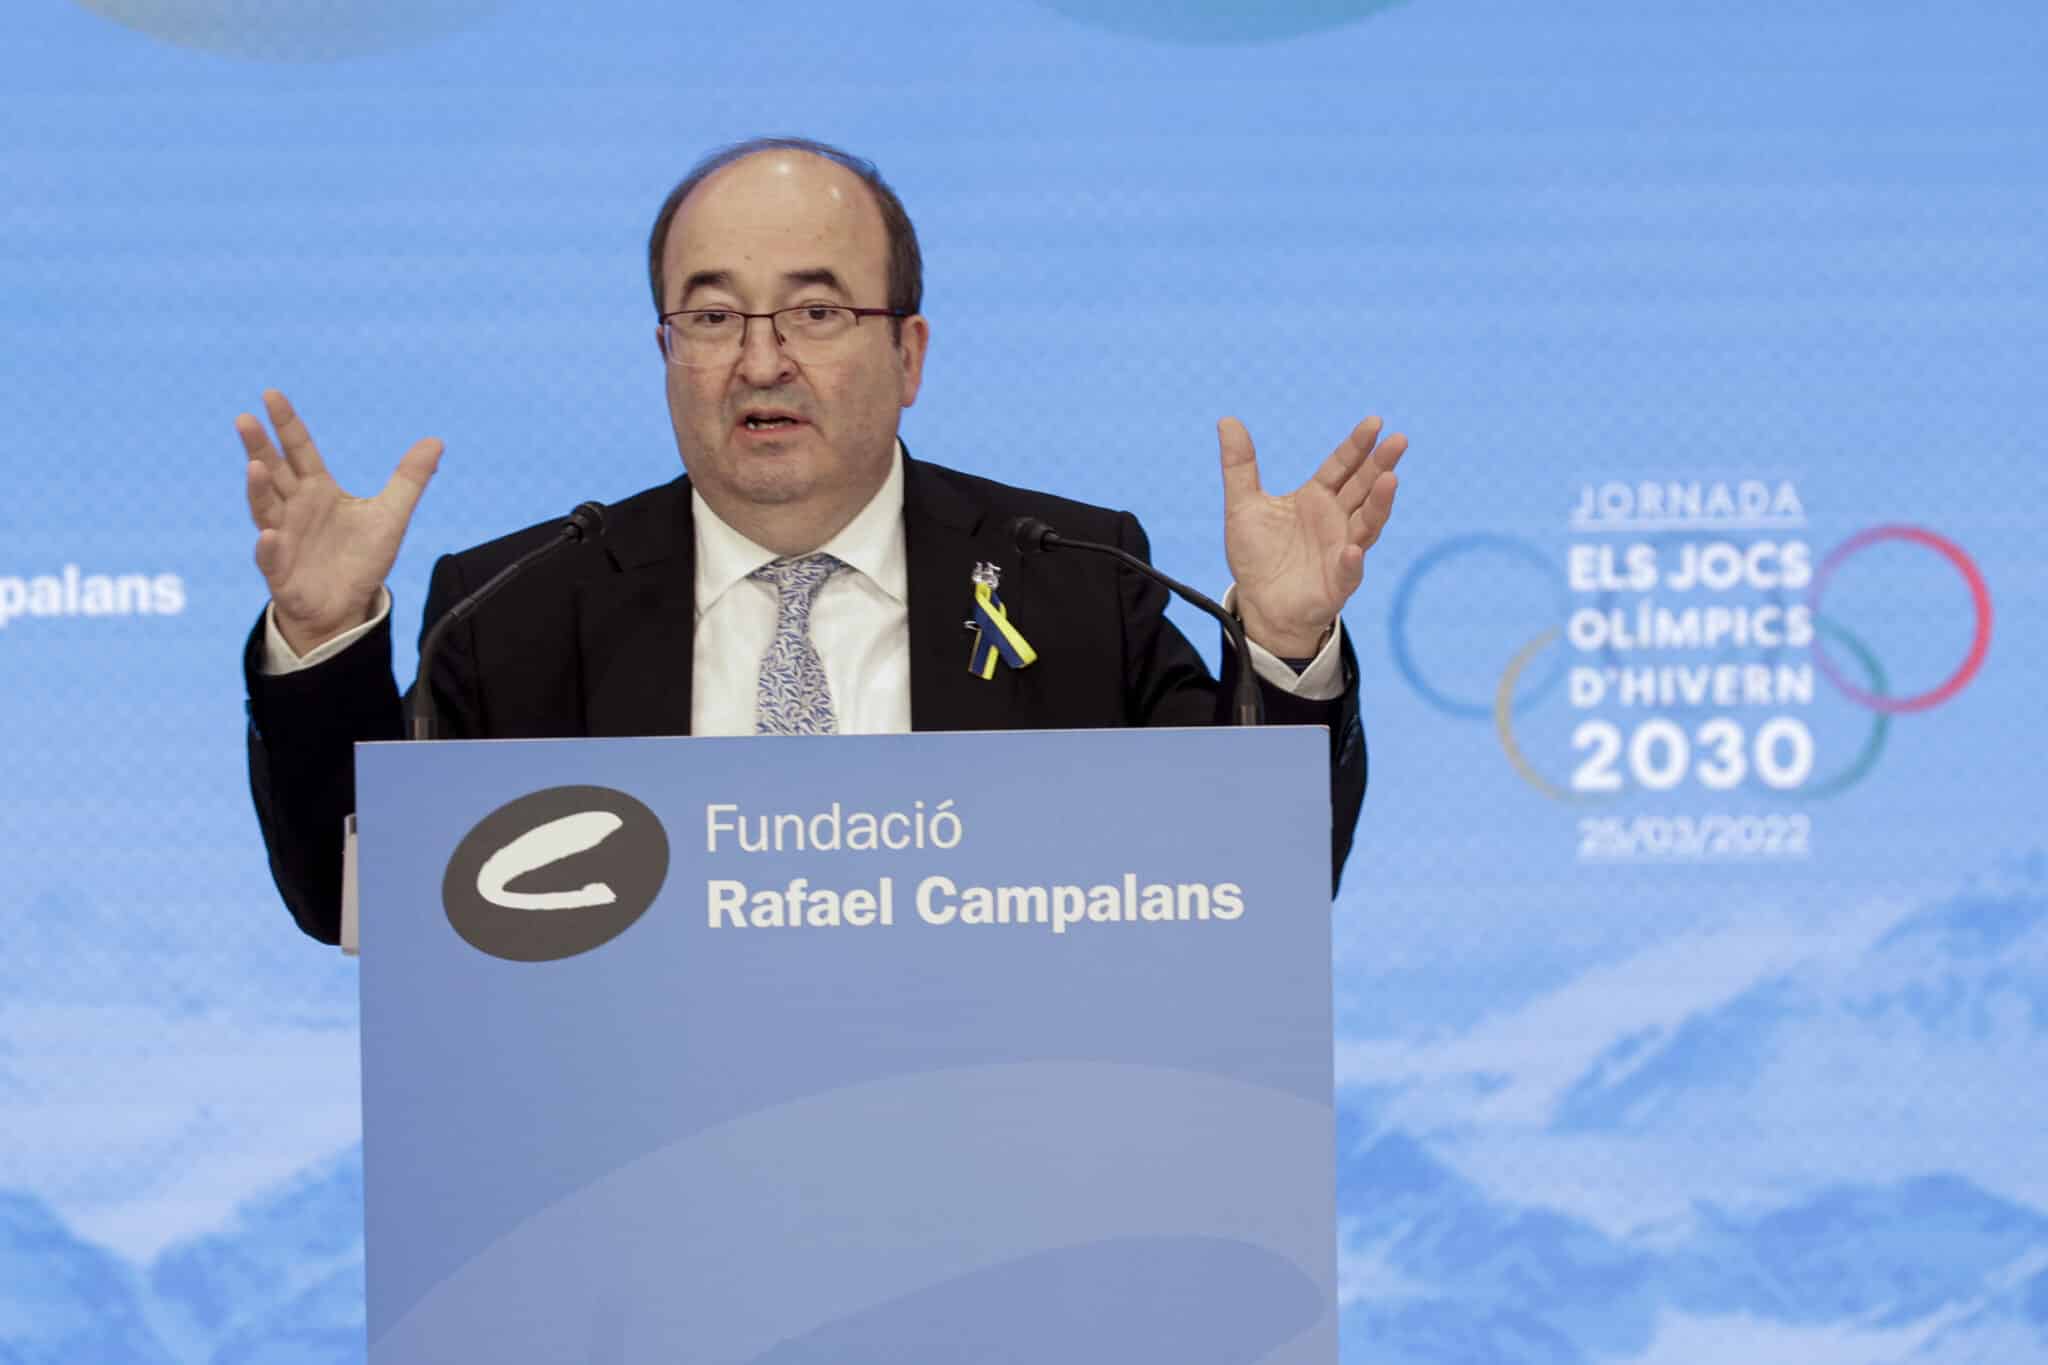 El ministro de Cultura y Deporte, Miquel Iceta, participa en la jornada de debate sobre el proyecto de candidatura olímpica de los Pirineos.